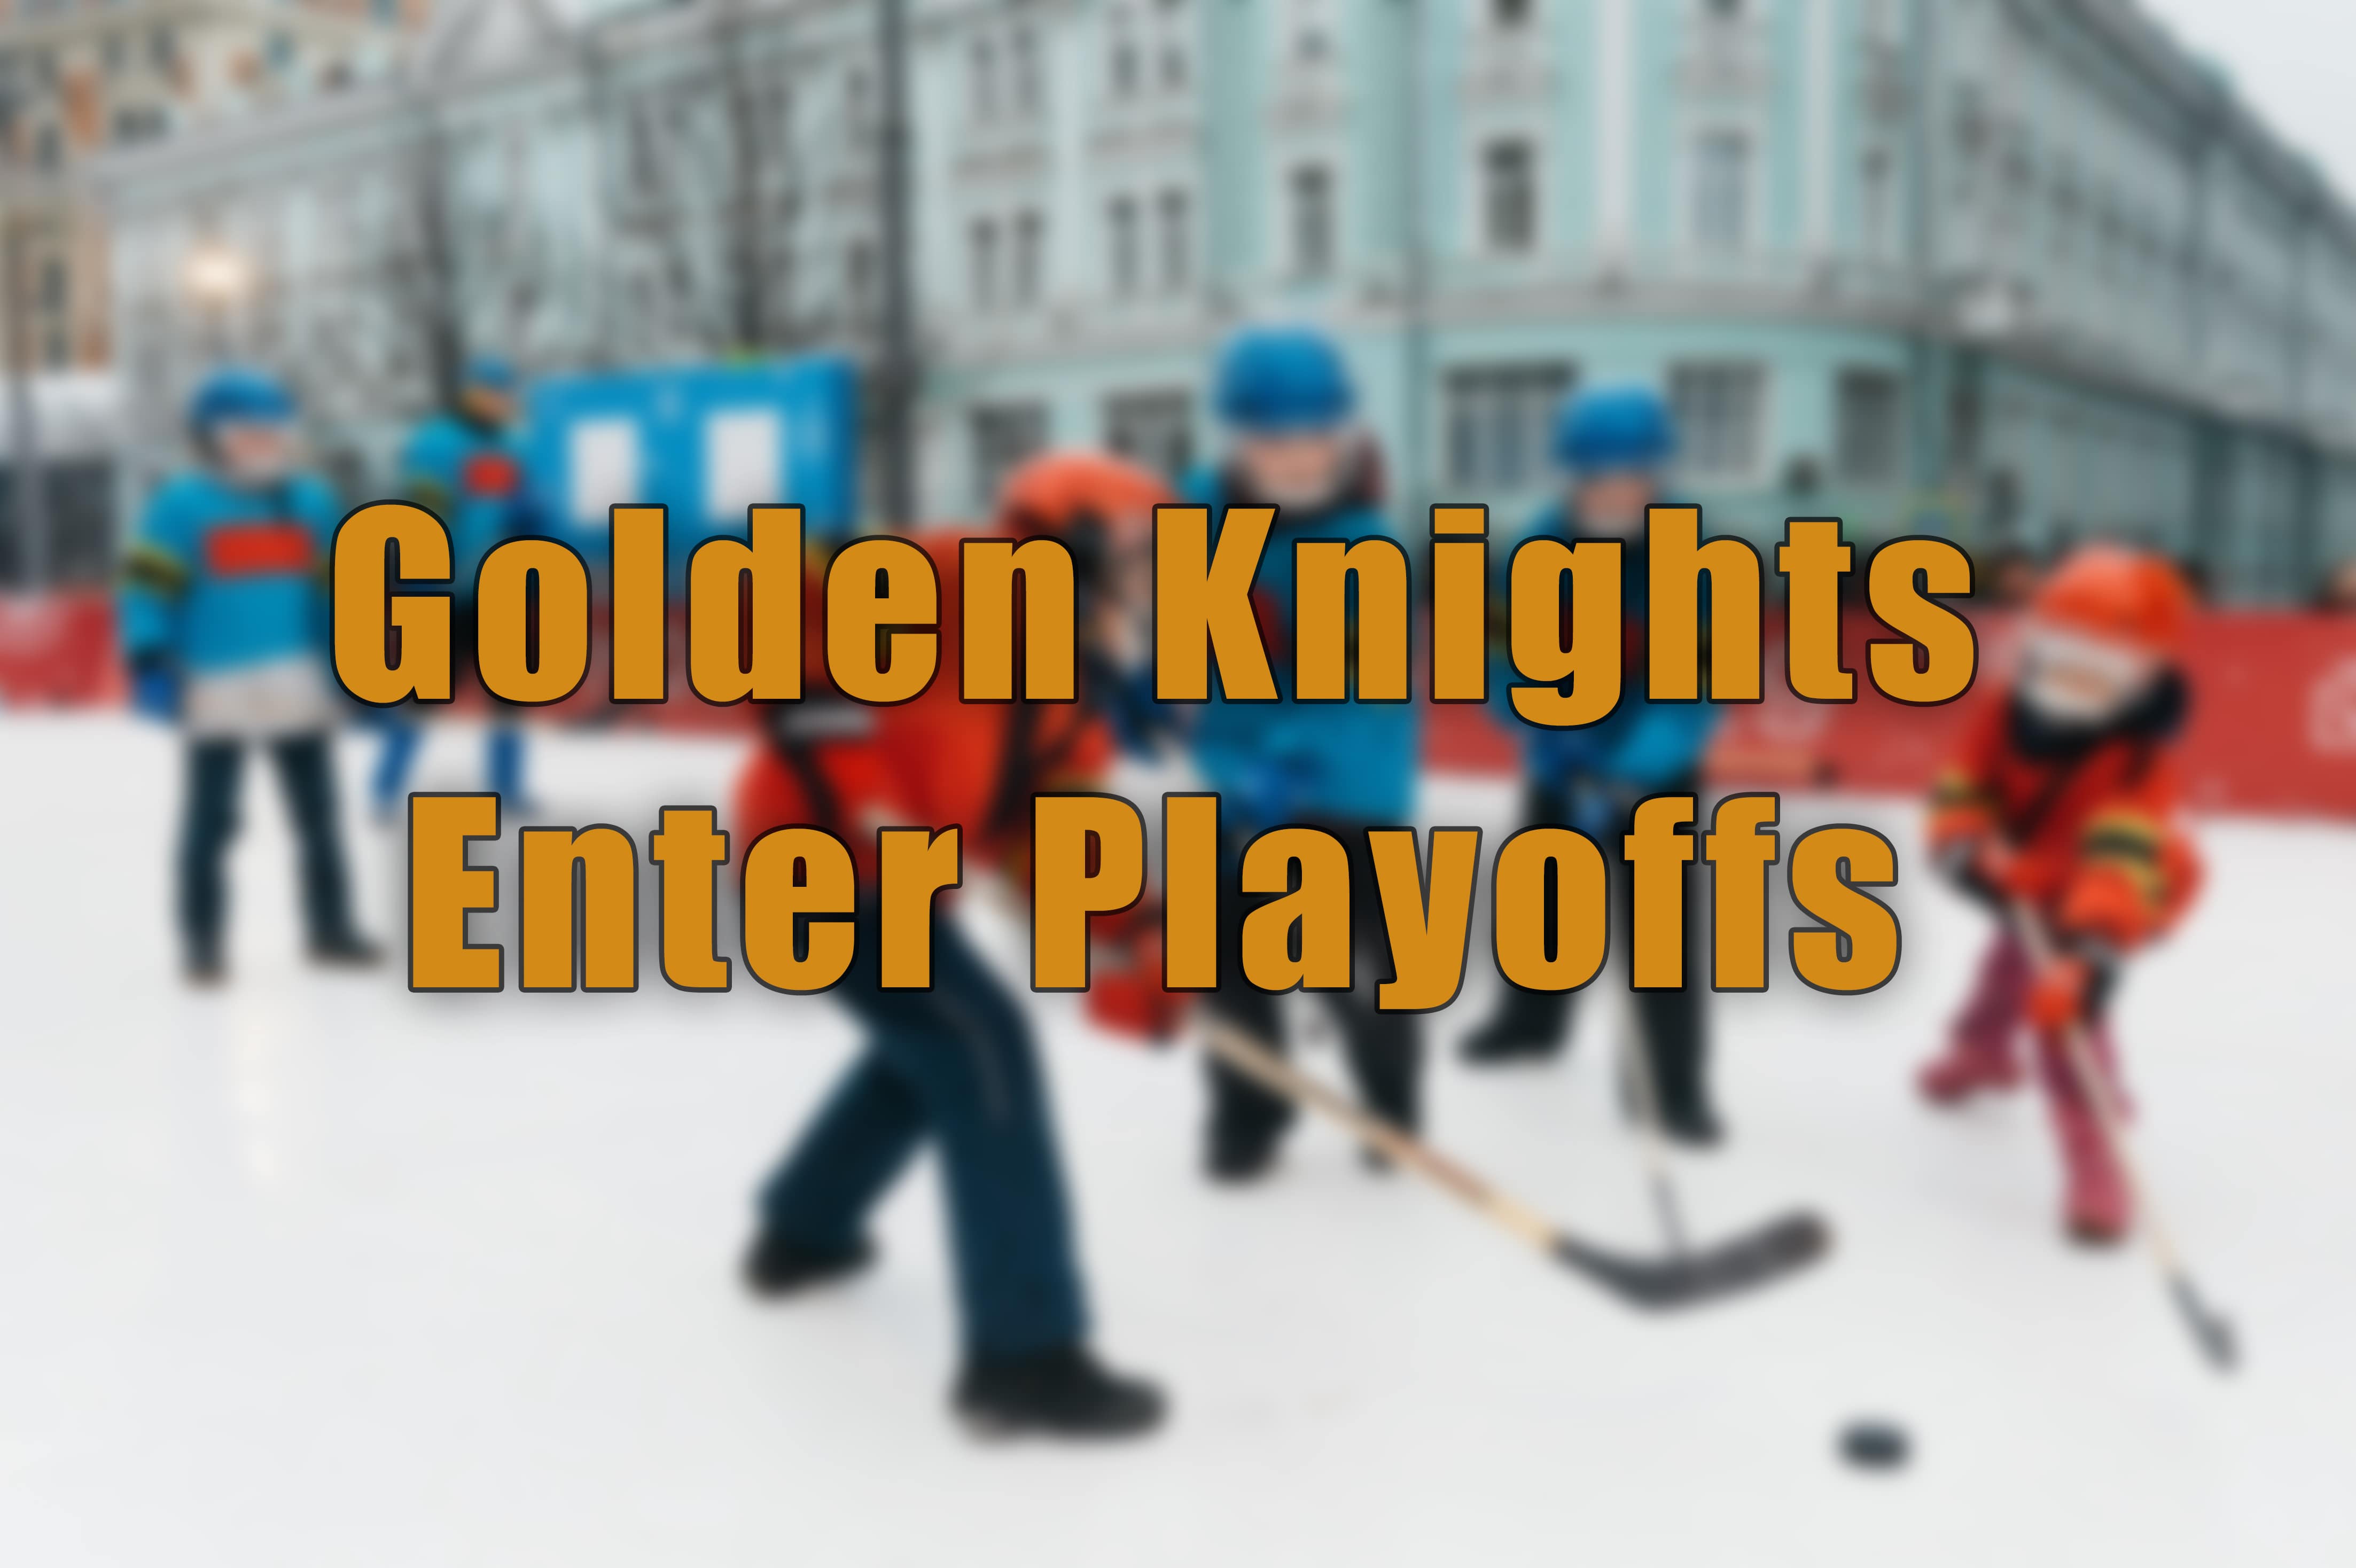 Golden Knights Playoffs.jpg